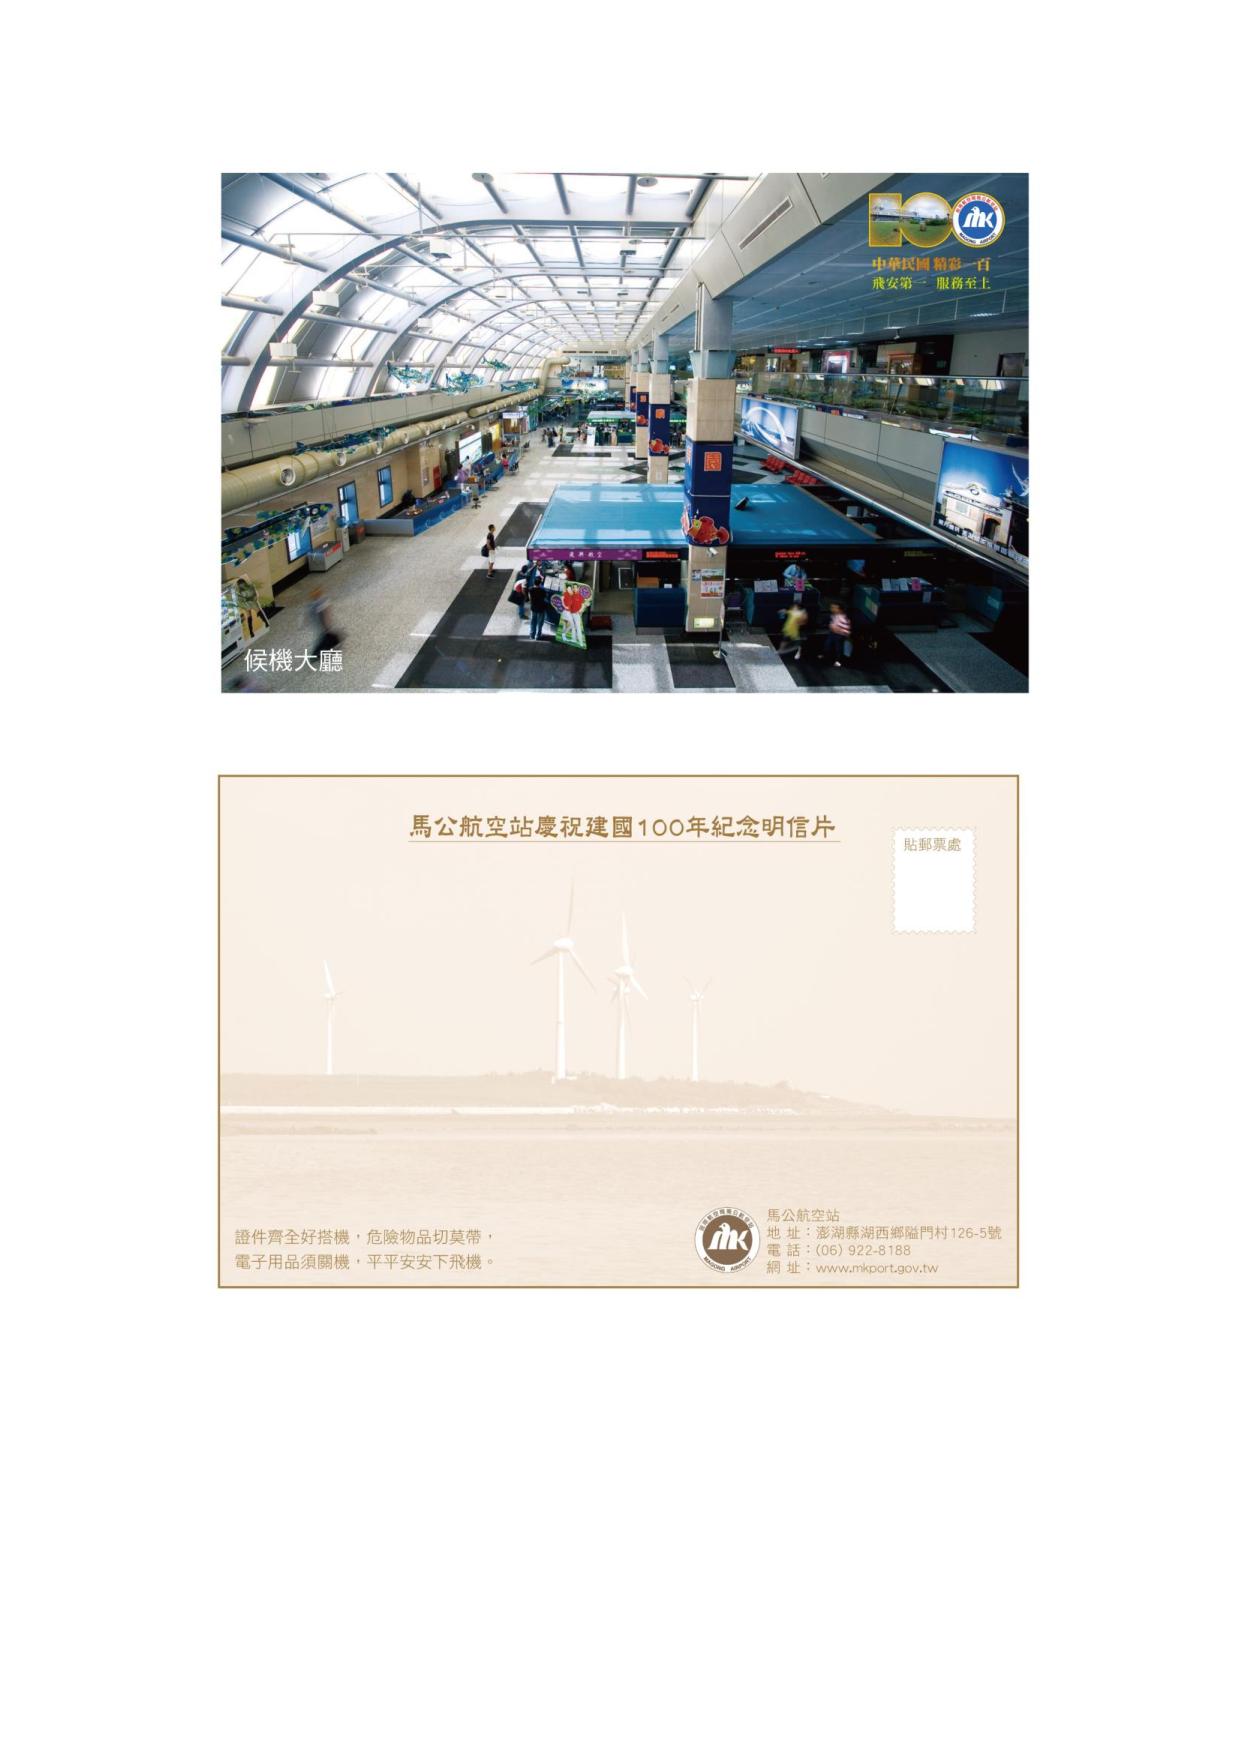 馬公站慶祝建國一百年紀念明信片1